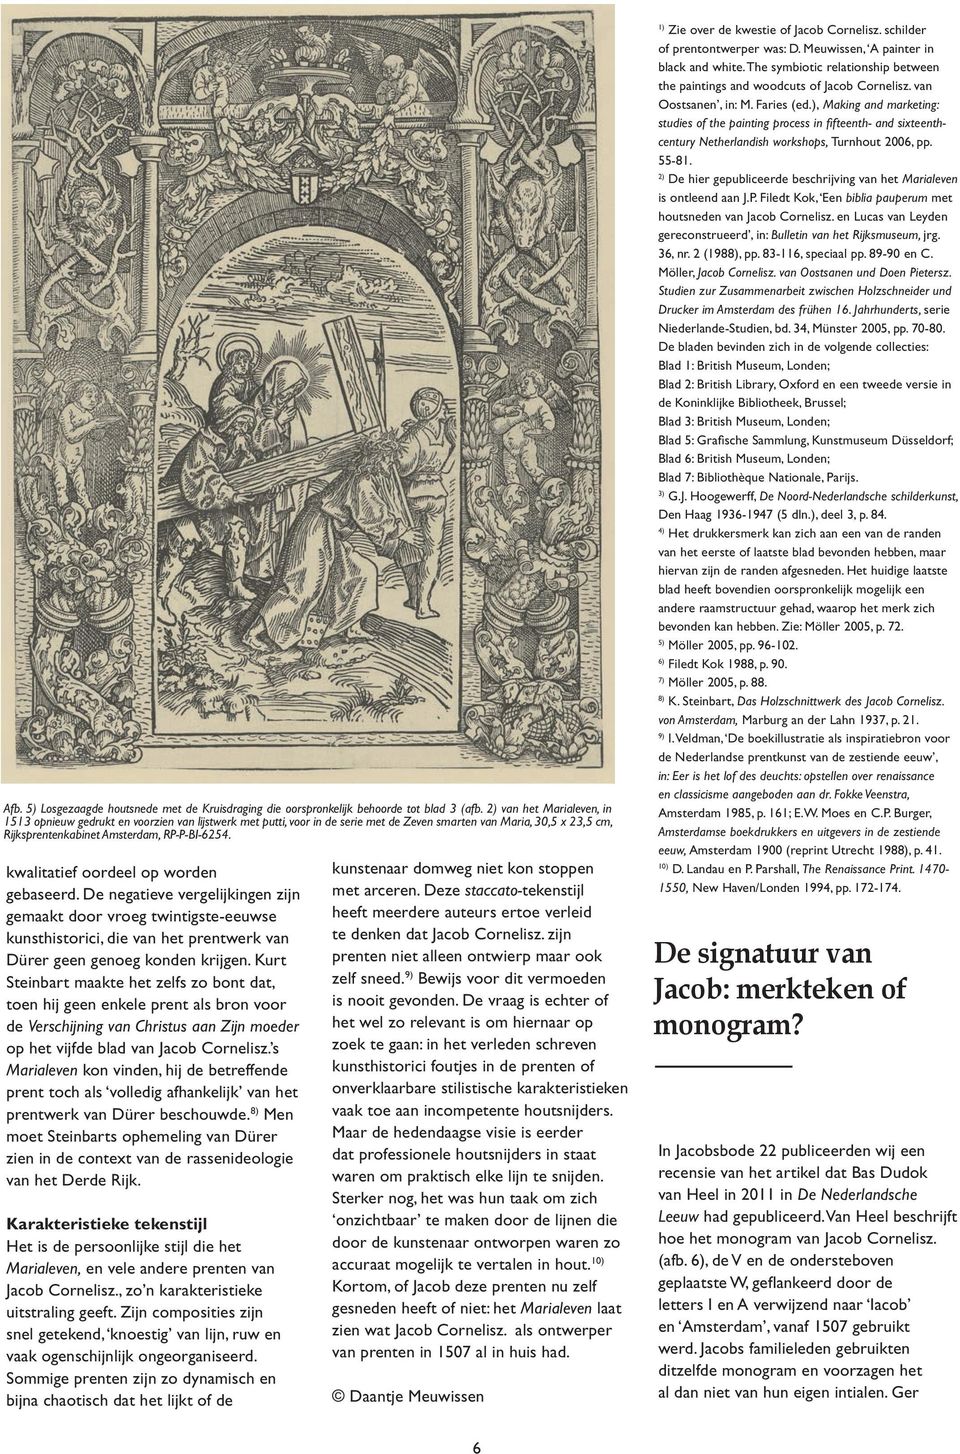 2) De hier gepubliceerde beschrijving van het Marialeven is ontleend aan J.P. Filedt Kok, Een biblia pauperum met houtsneden van Jacob Cornelisz.